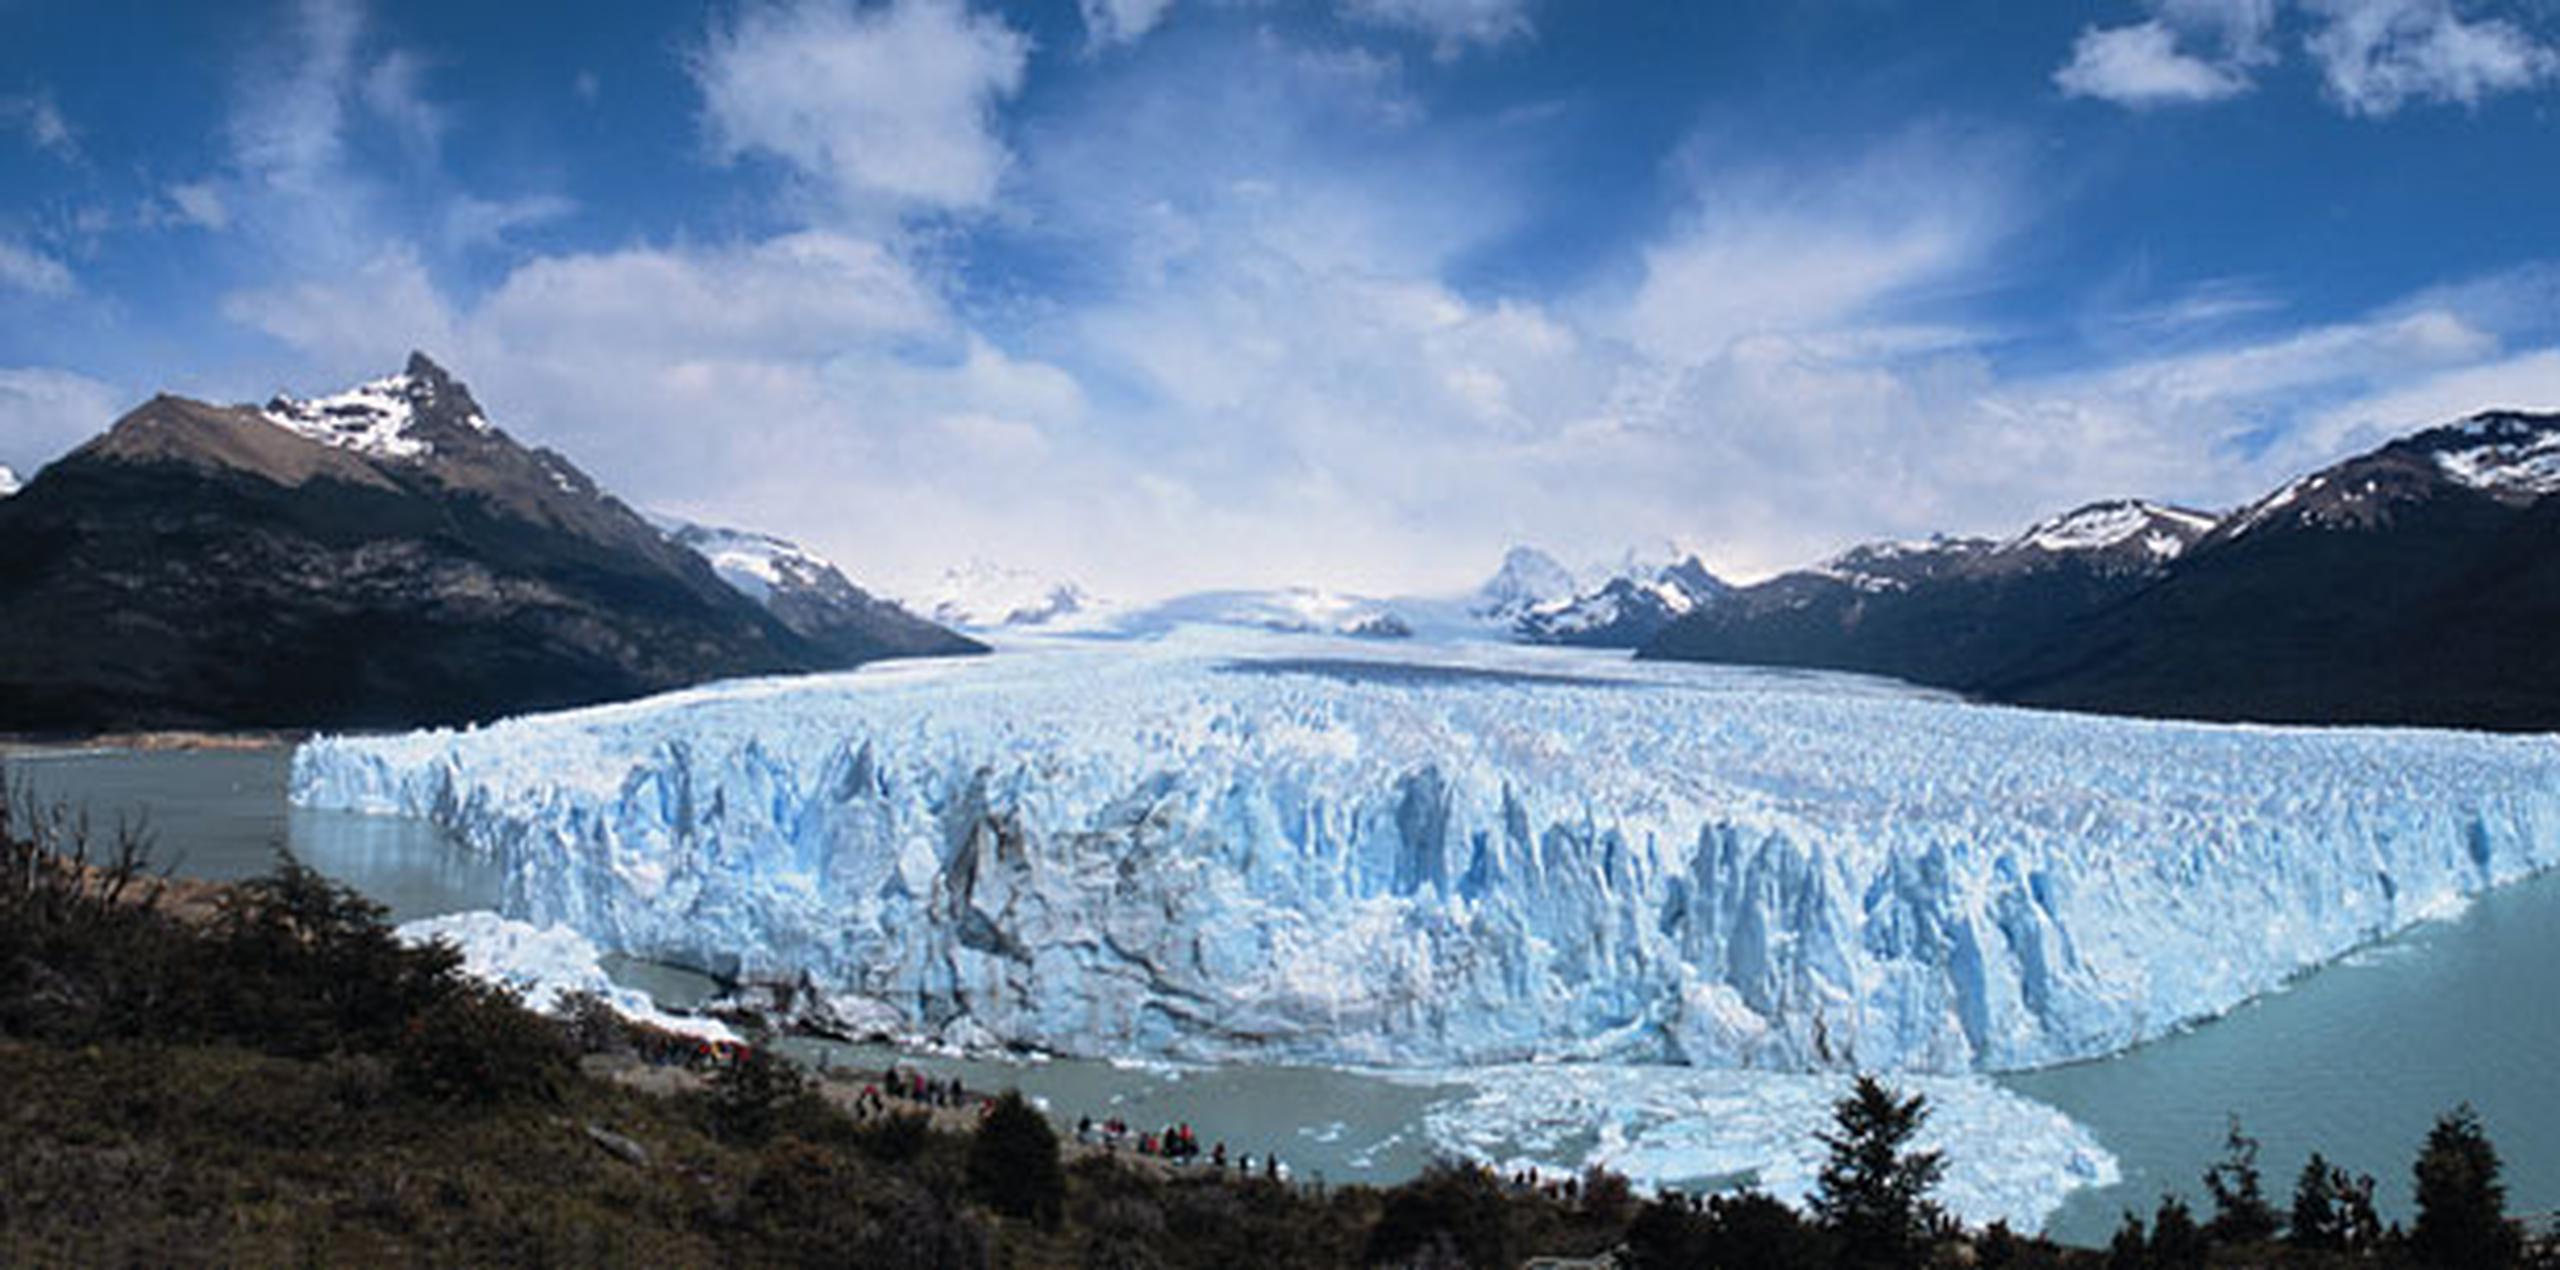 Revelaron que dichas formaciones de hielo ocupan 8,484 kilómetros cuadrados, lo que equivale a 41 veces el tamaño de la Ciudad Autónoma de Buenos Aires. (Archivo)